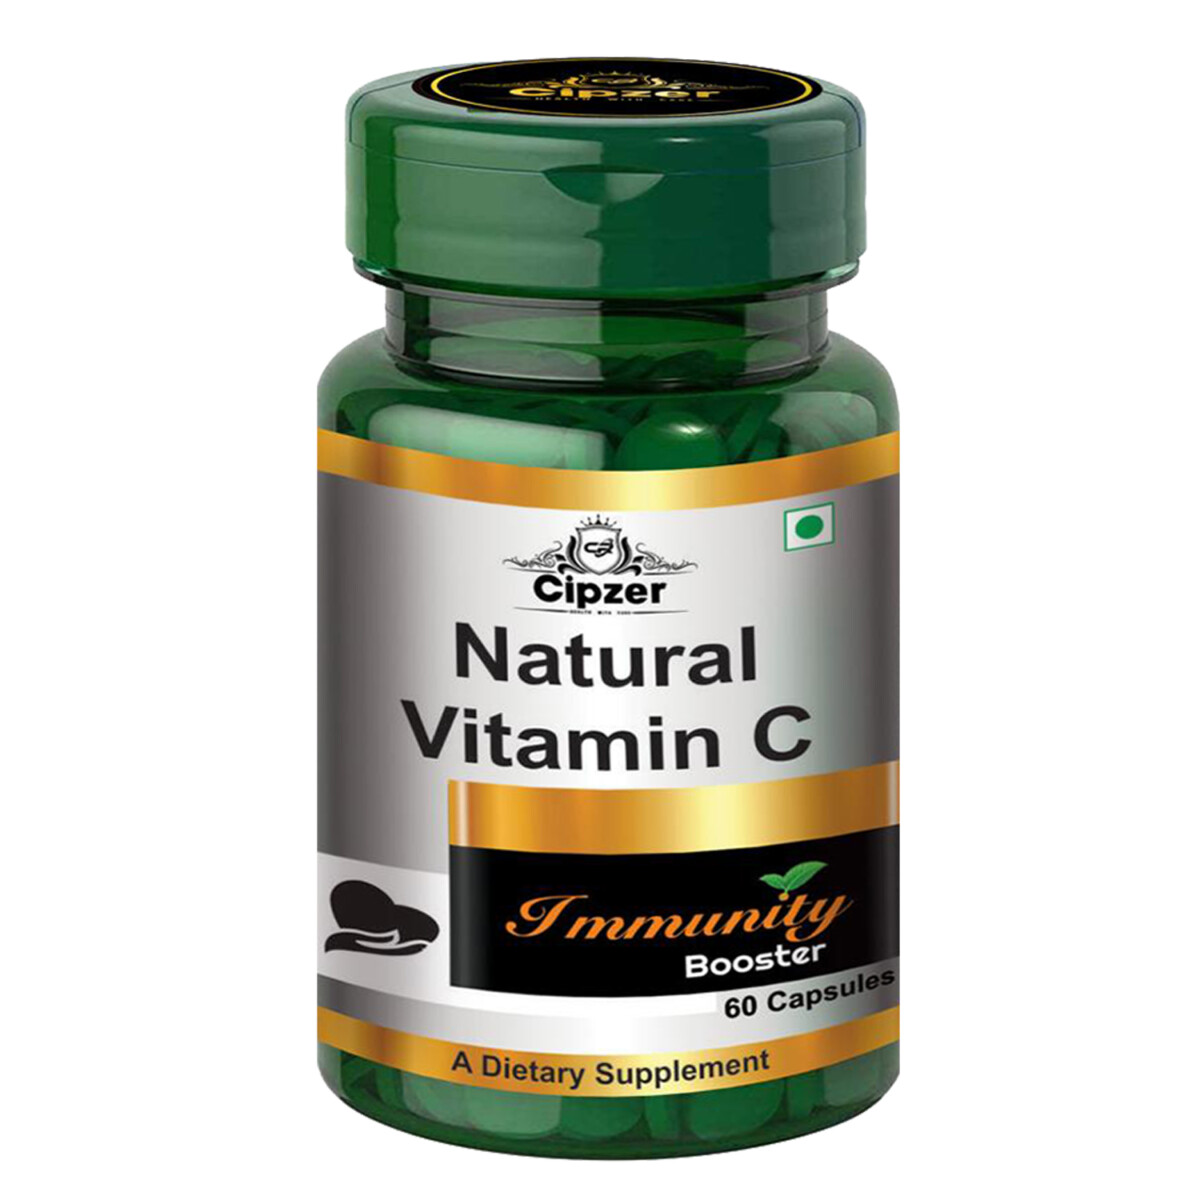 Natural Vitamin C Capsule